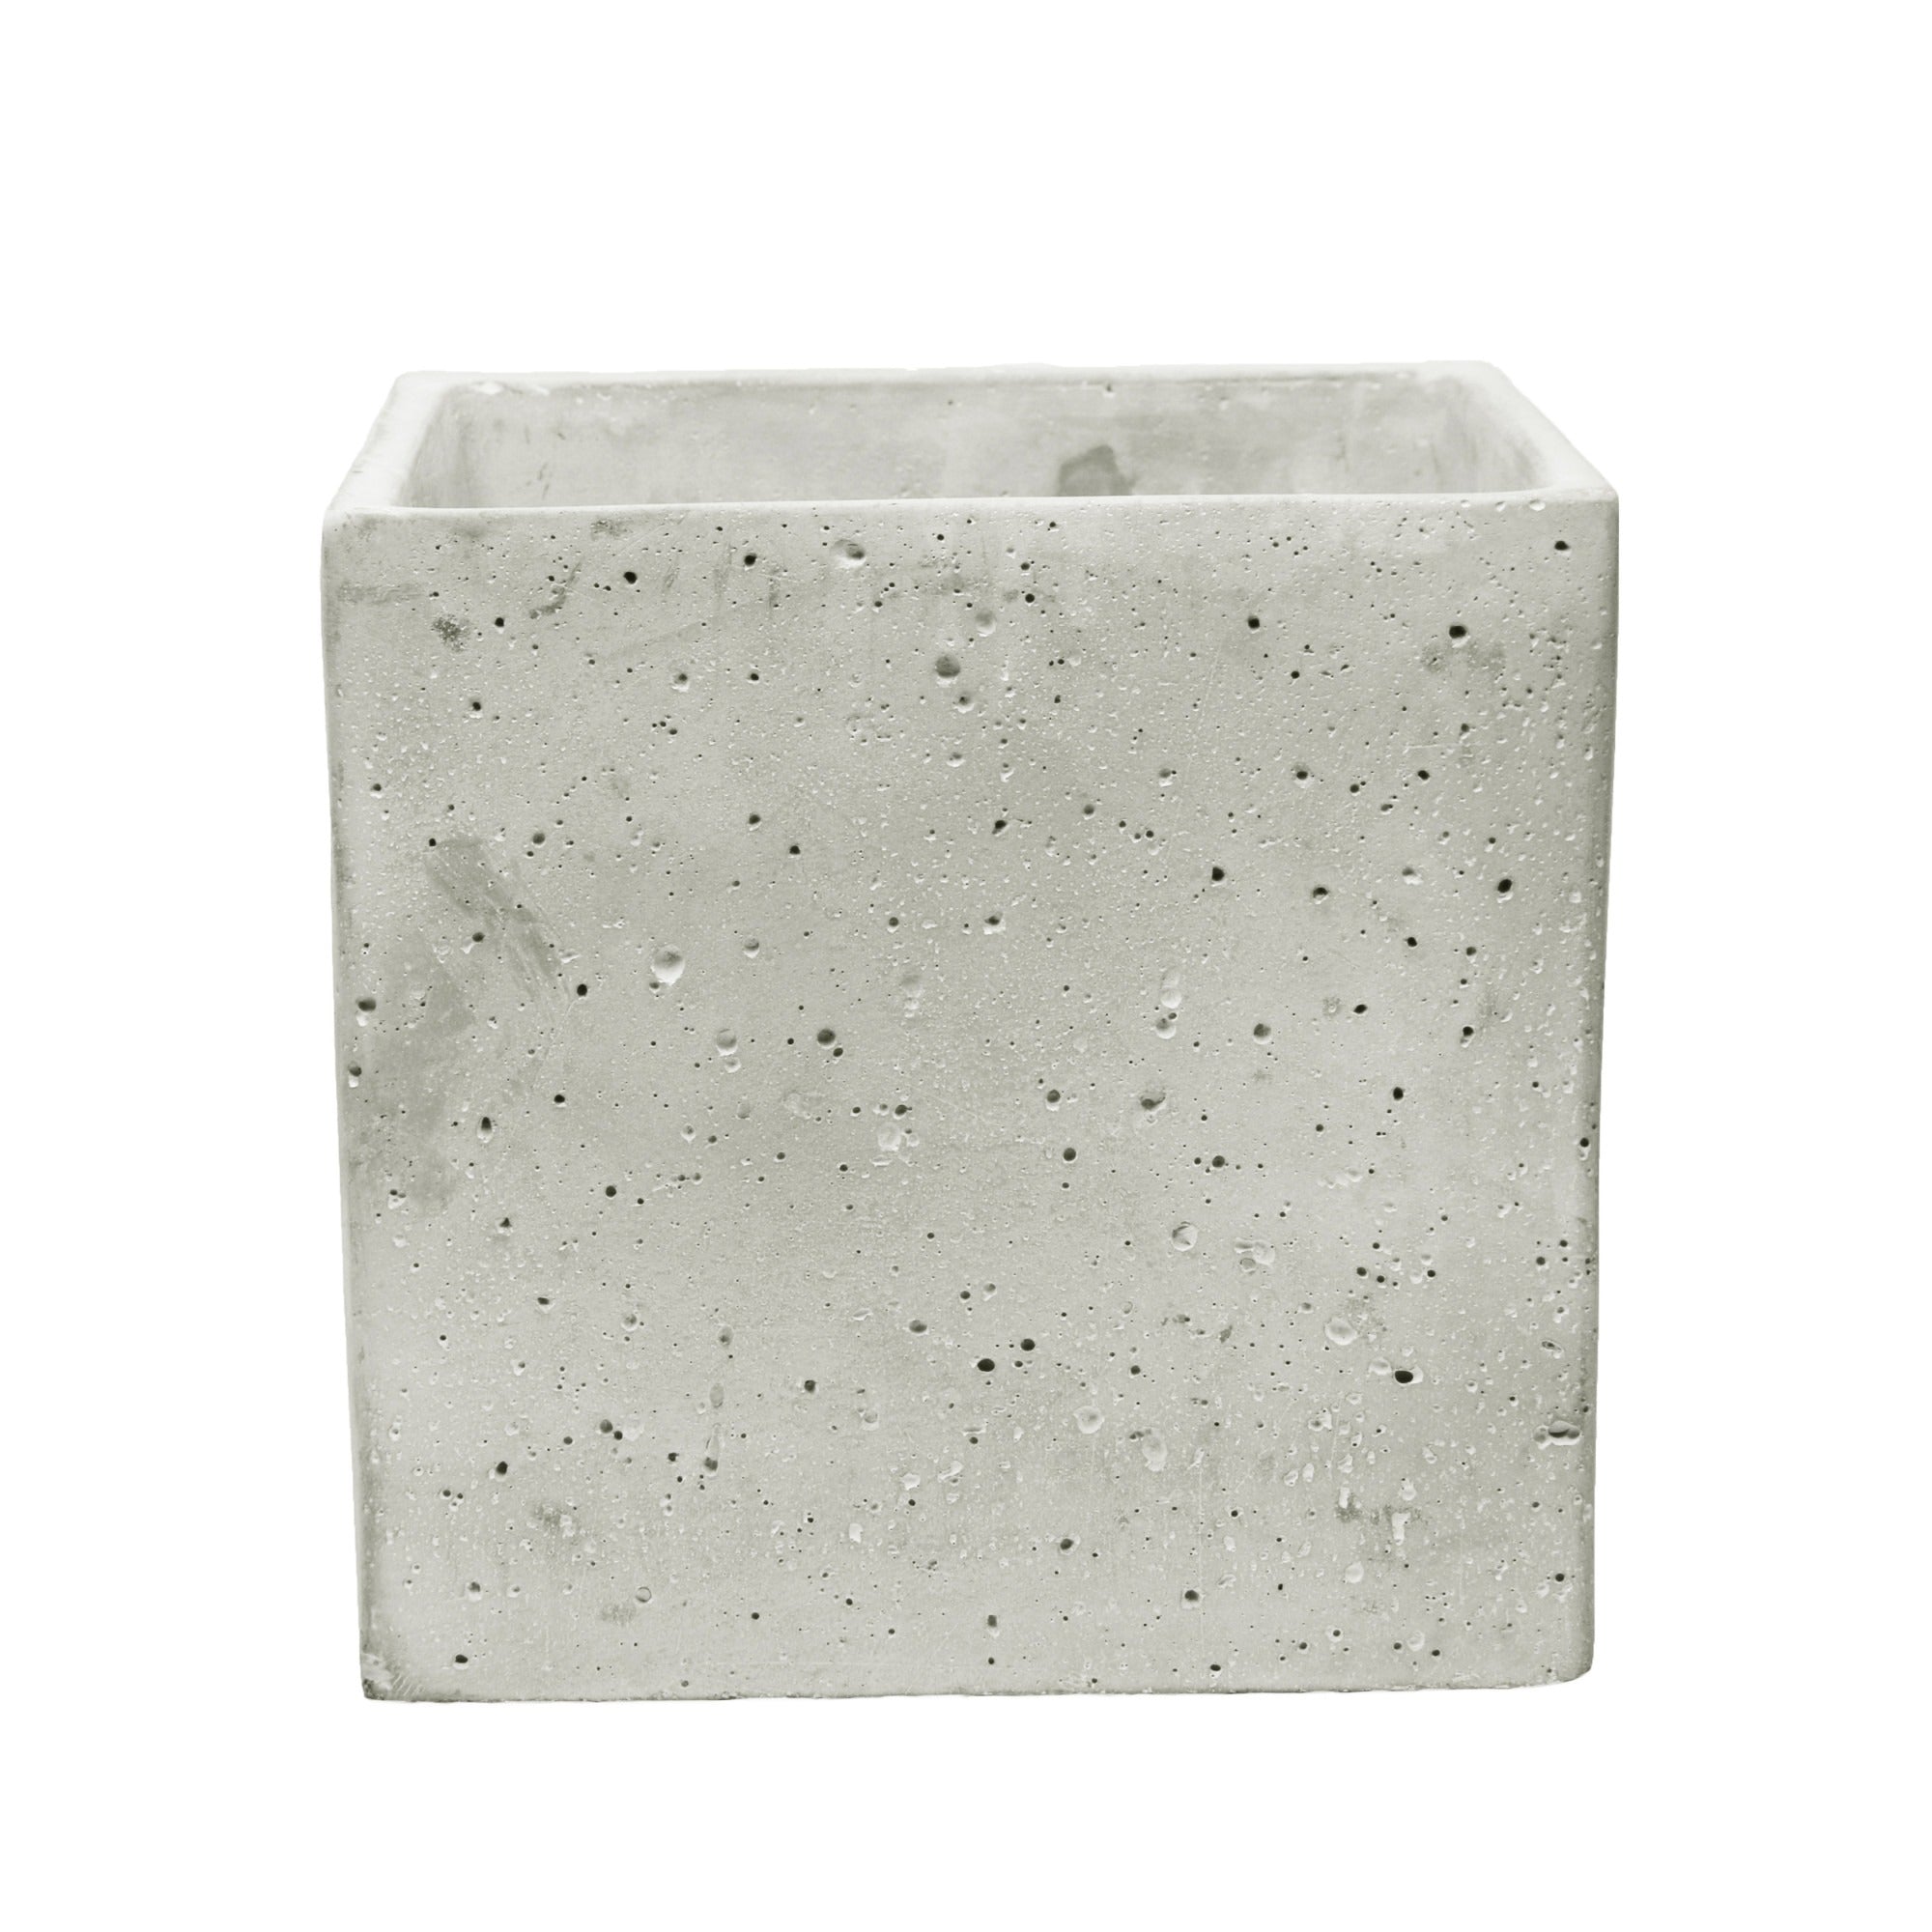 View Square Cement Flower Pot 14cm information